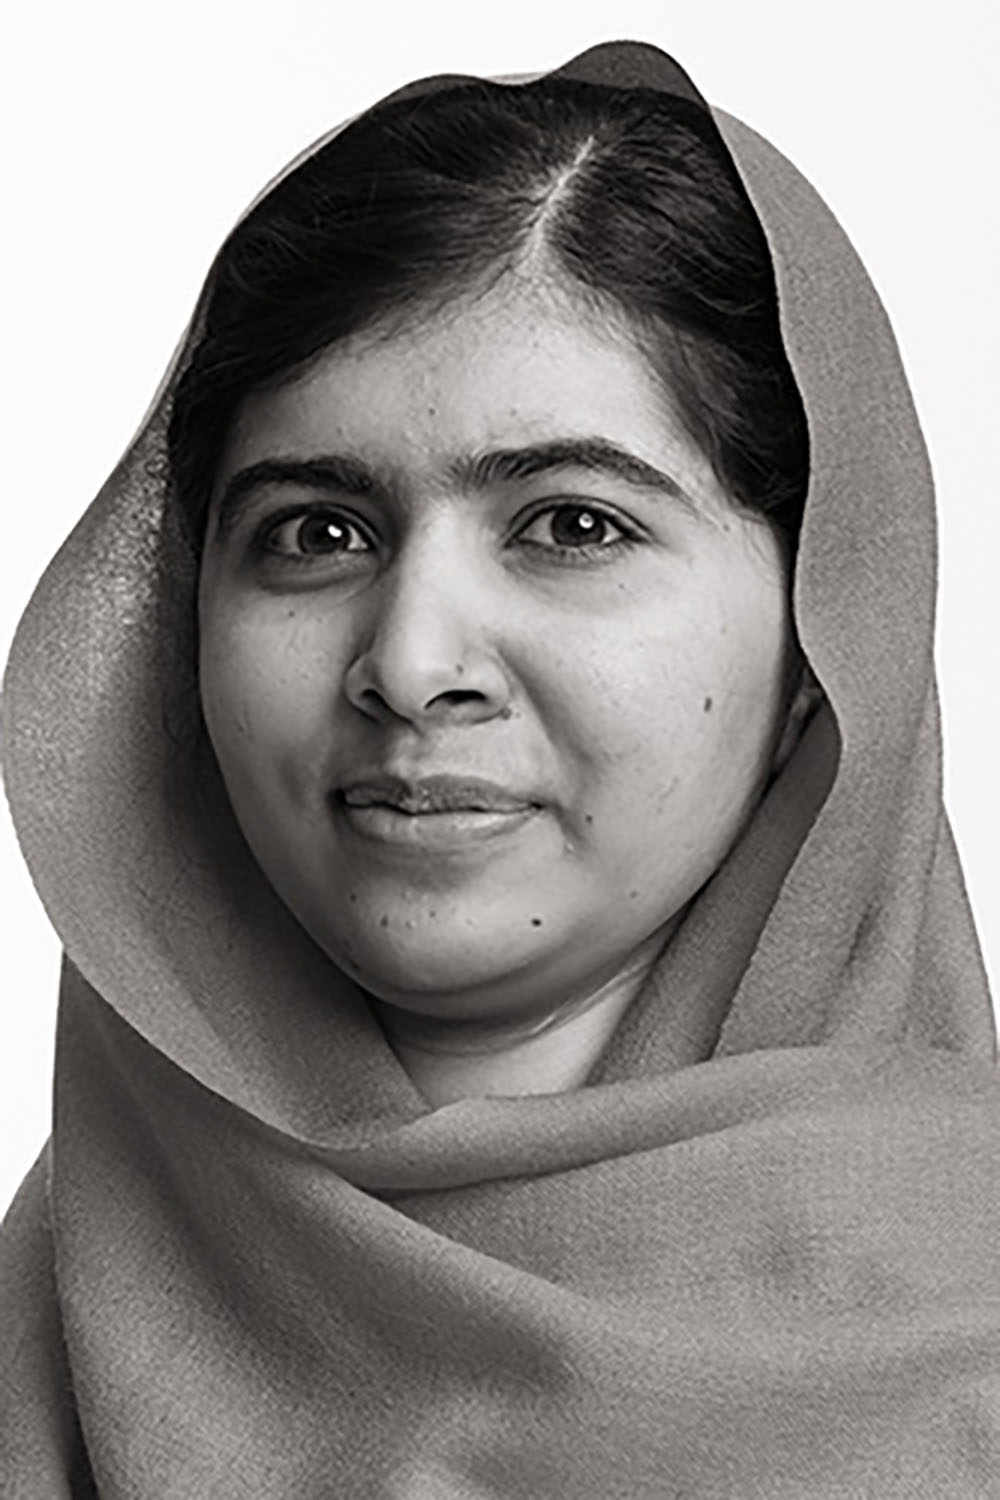 MALALA YOUSAFZAÏ a 15 ans lorsqu’elle est blessée au visage par des tirs de talibans dans la vallée de Swat, au Pakistan, en 2012. Ils voulaient l’empêcher, elle et d’autres jeunes filles, d’aller à l’école. Elle a survécu à ses graves blessures et a continué à se battre.  En 2013, Malala devient la plus jeune lauréate du prix Sakharov. Elle dédie alors sa distinction aux « héros pakistanais de l’ombre » et prononce un vibrant plaidoyer pour le droit de tous les enfants à l’éducation.